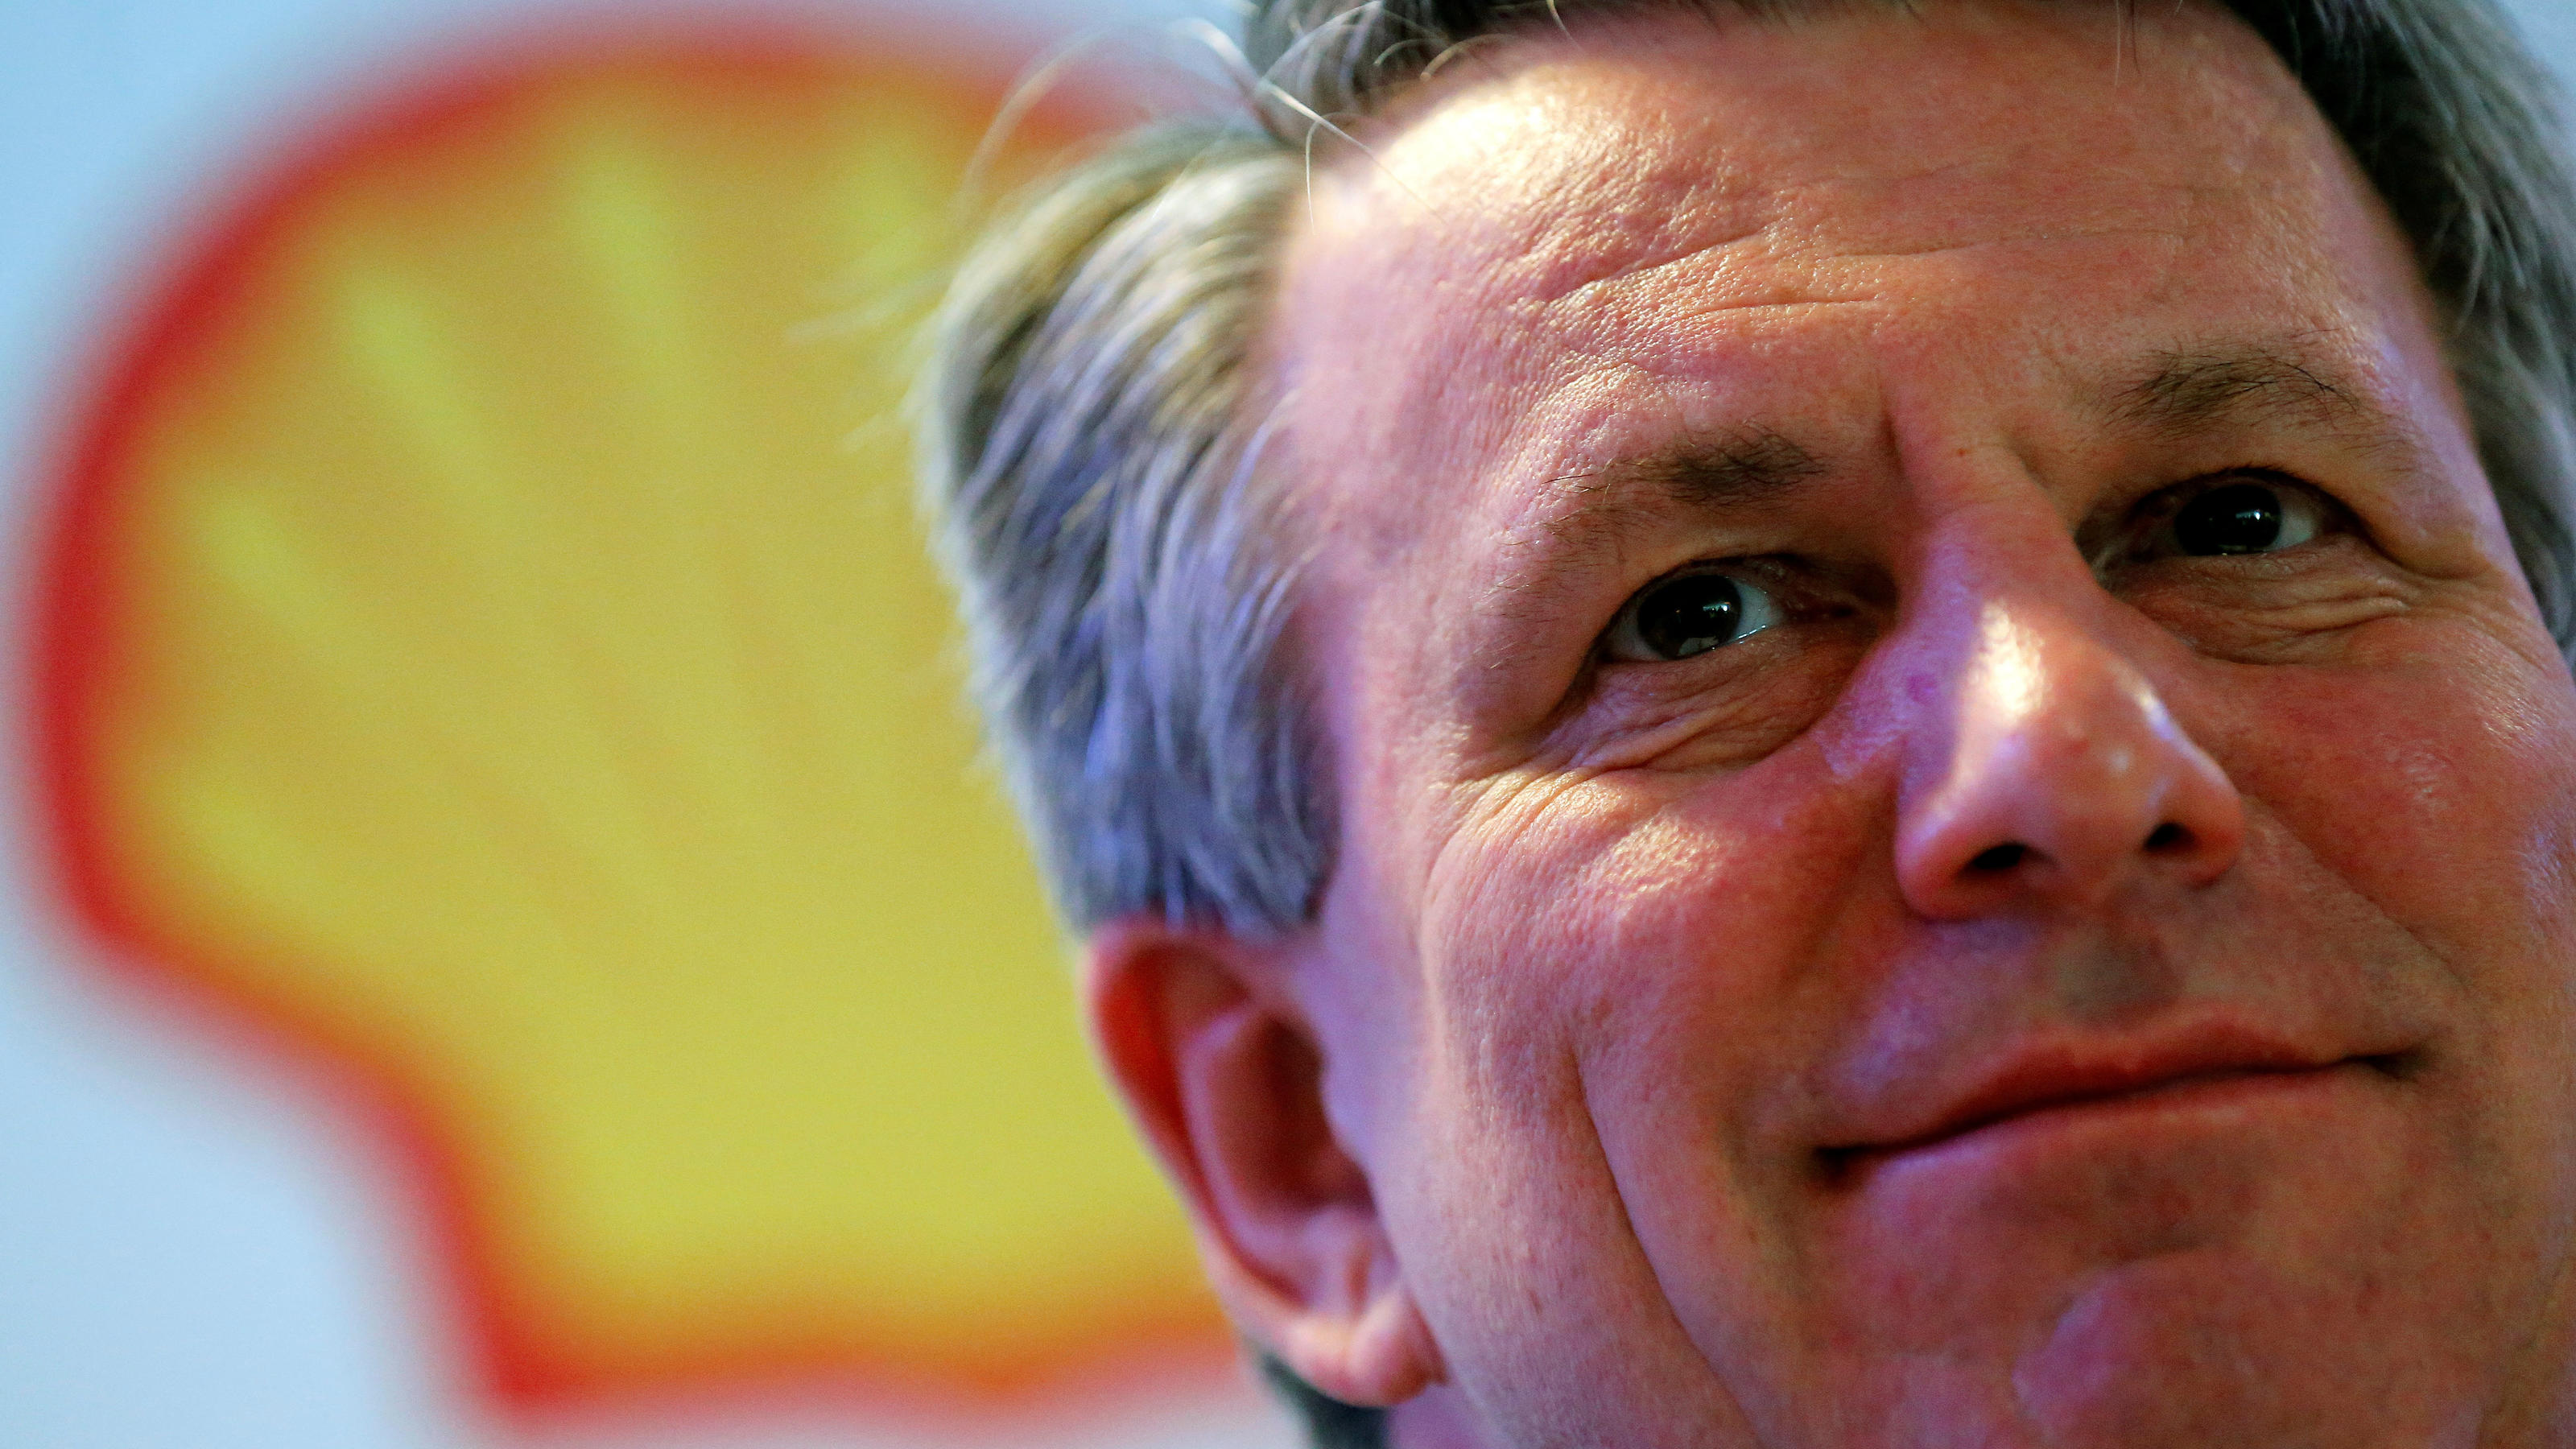 Shell-CEO van Beurden warnte diese Woche vor weiteren harten Wintern.